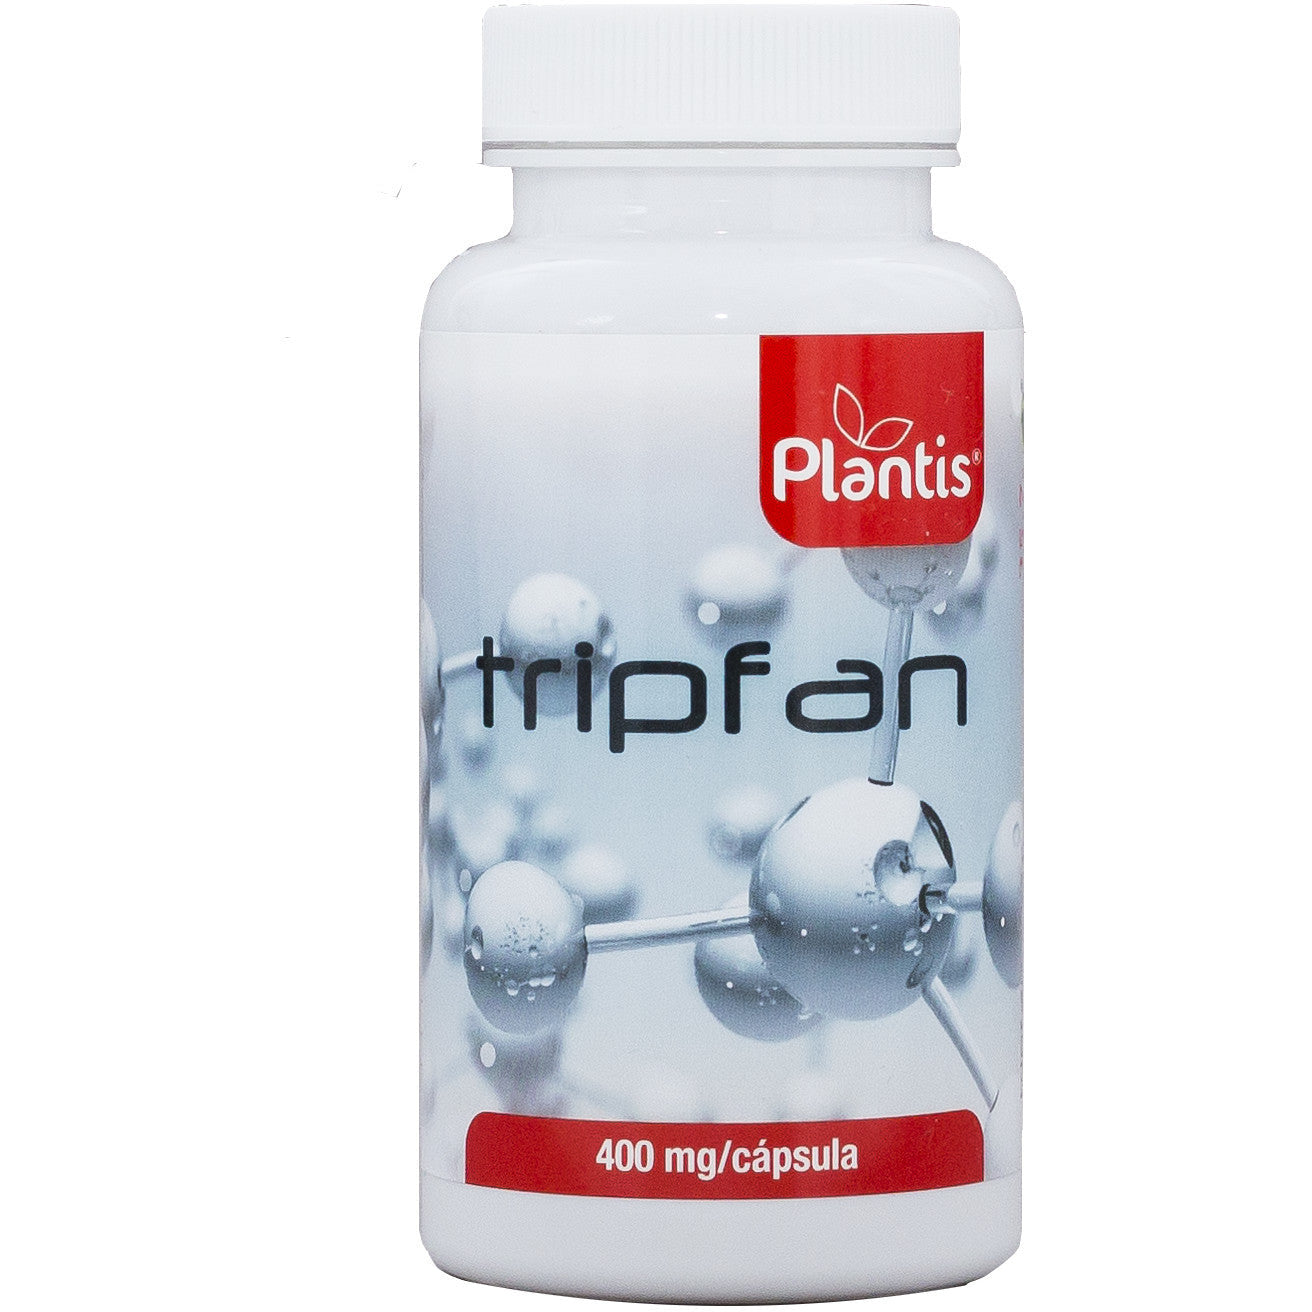 Tripfan 60 Capsulas | Plantis - Dietetica Ferrer